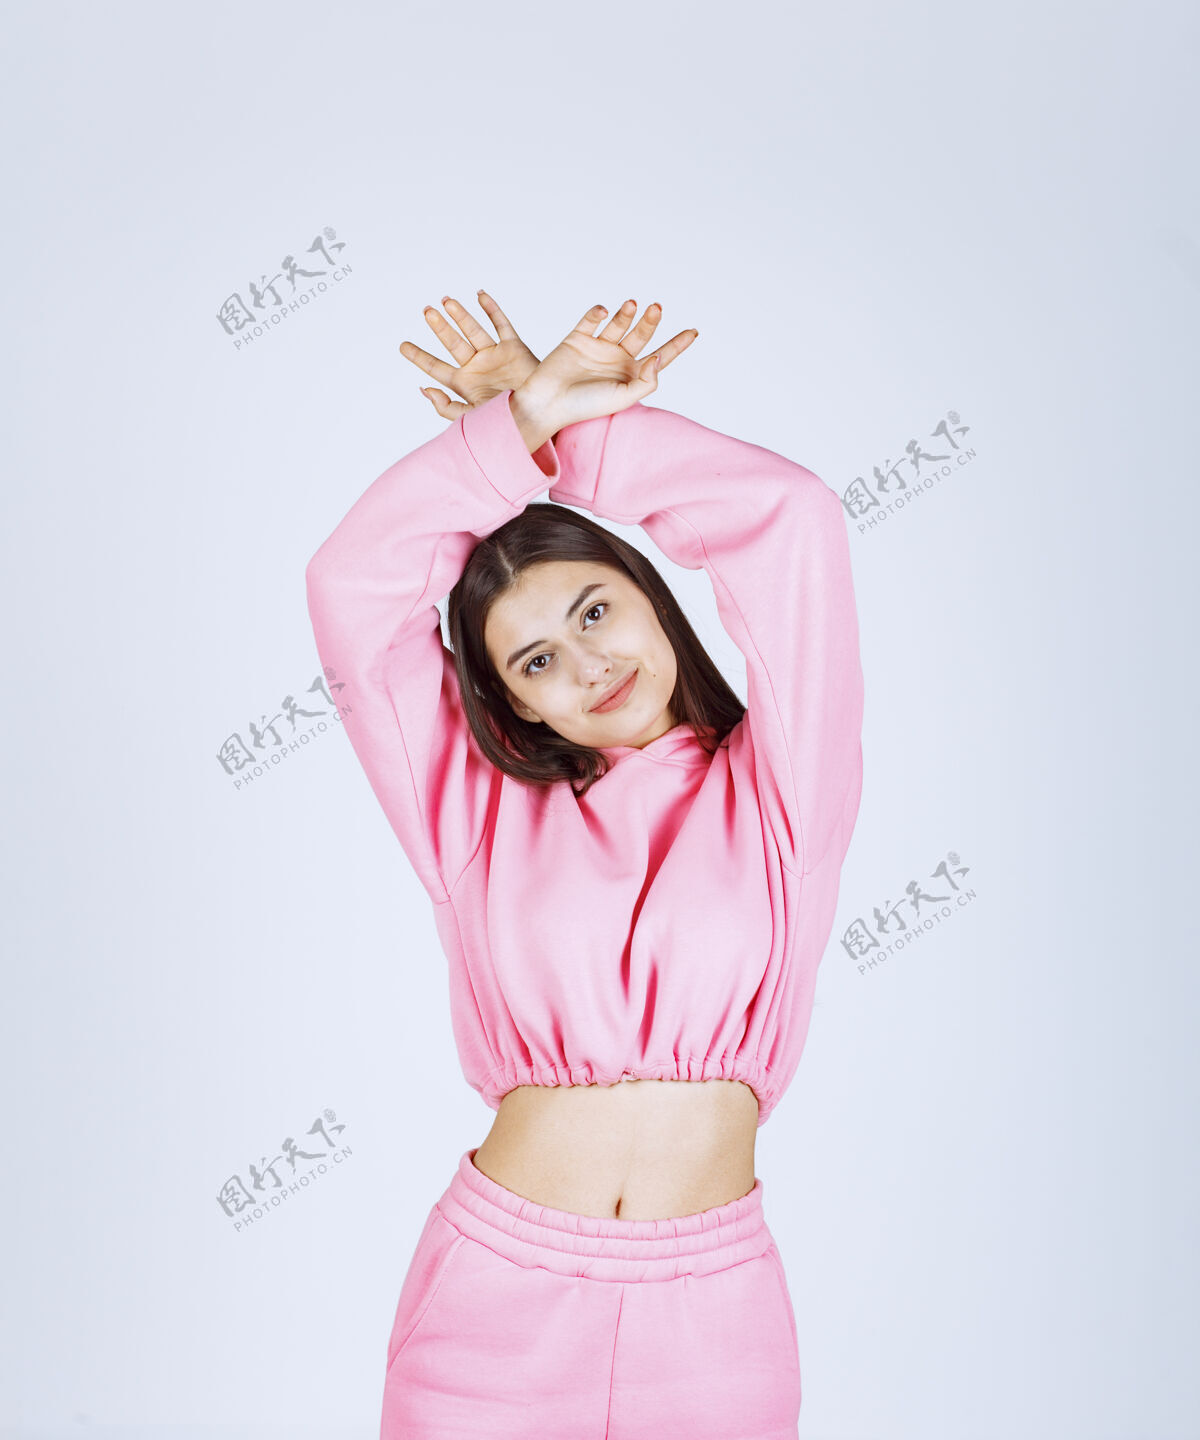 成人穿着粉色睡衣的女孩摆出快乐诱人的姿势舞蹈乐趣人类